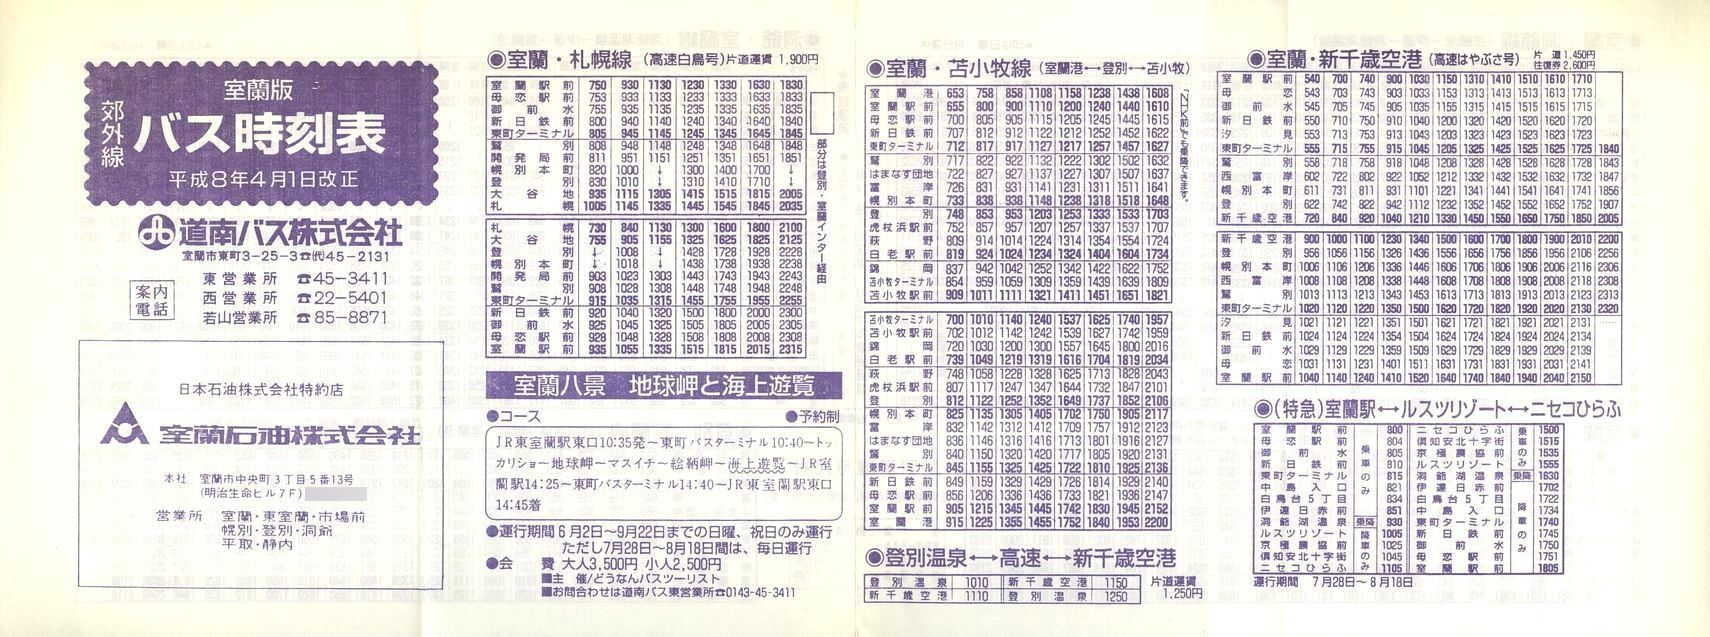 1996-04-01_oX_ōxO\\